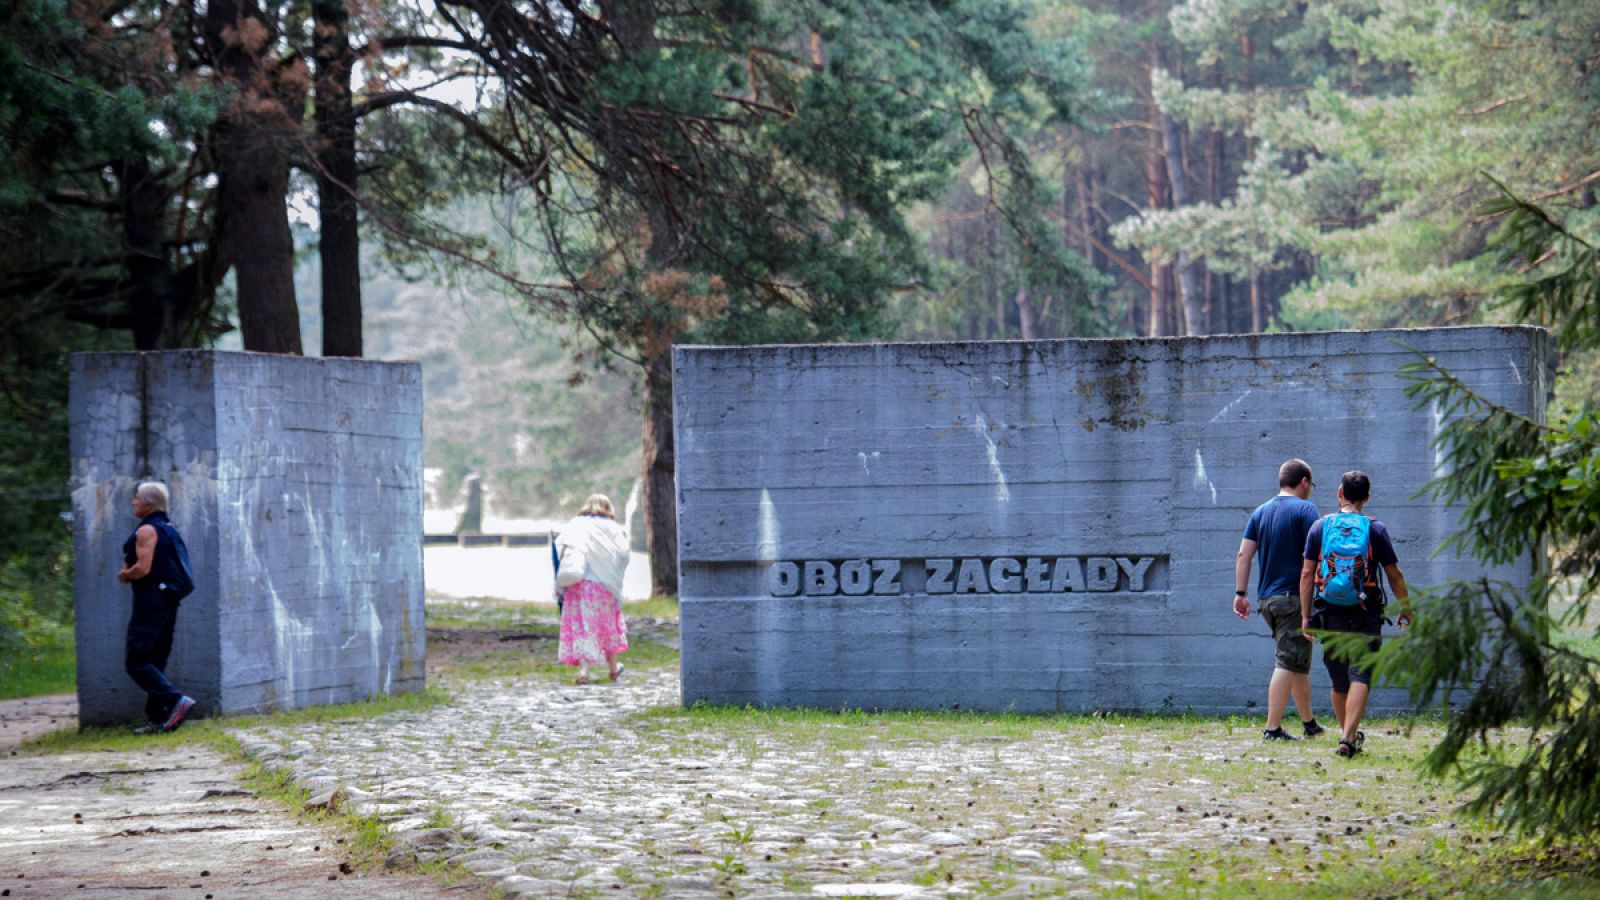 Imagen del exterior del museo de Treblinka, localizado en el lugar donde estuvo el antiguo campo de exterminio nazi, a unos 100 kilómetros de Varsovia.